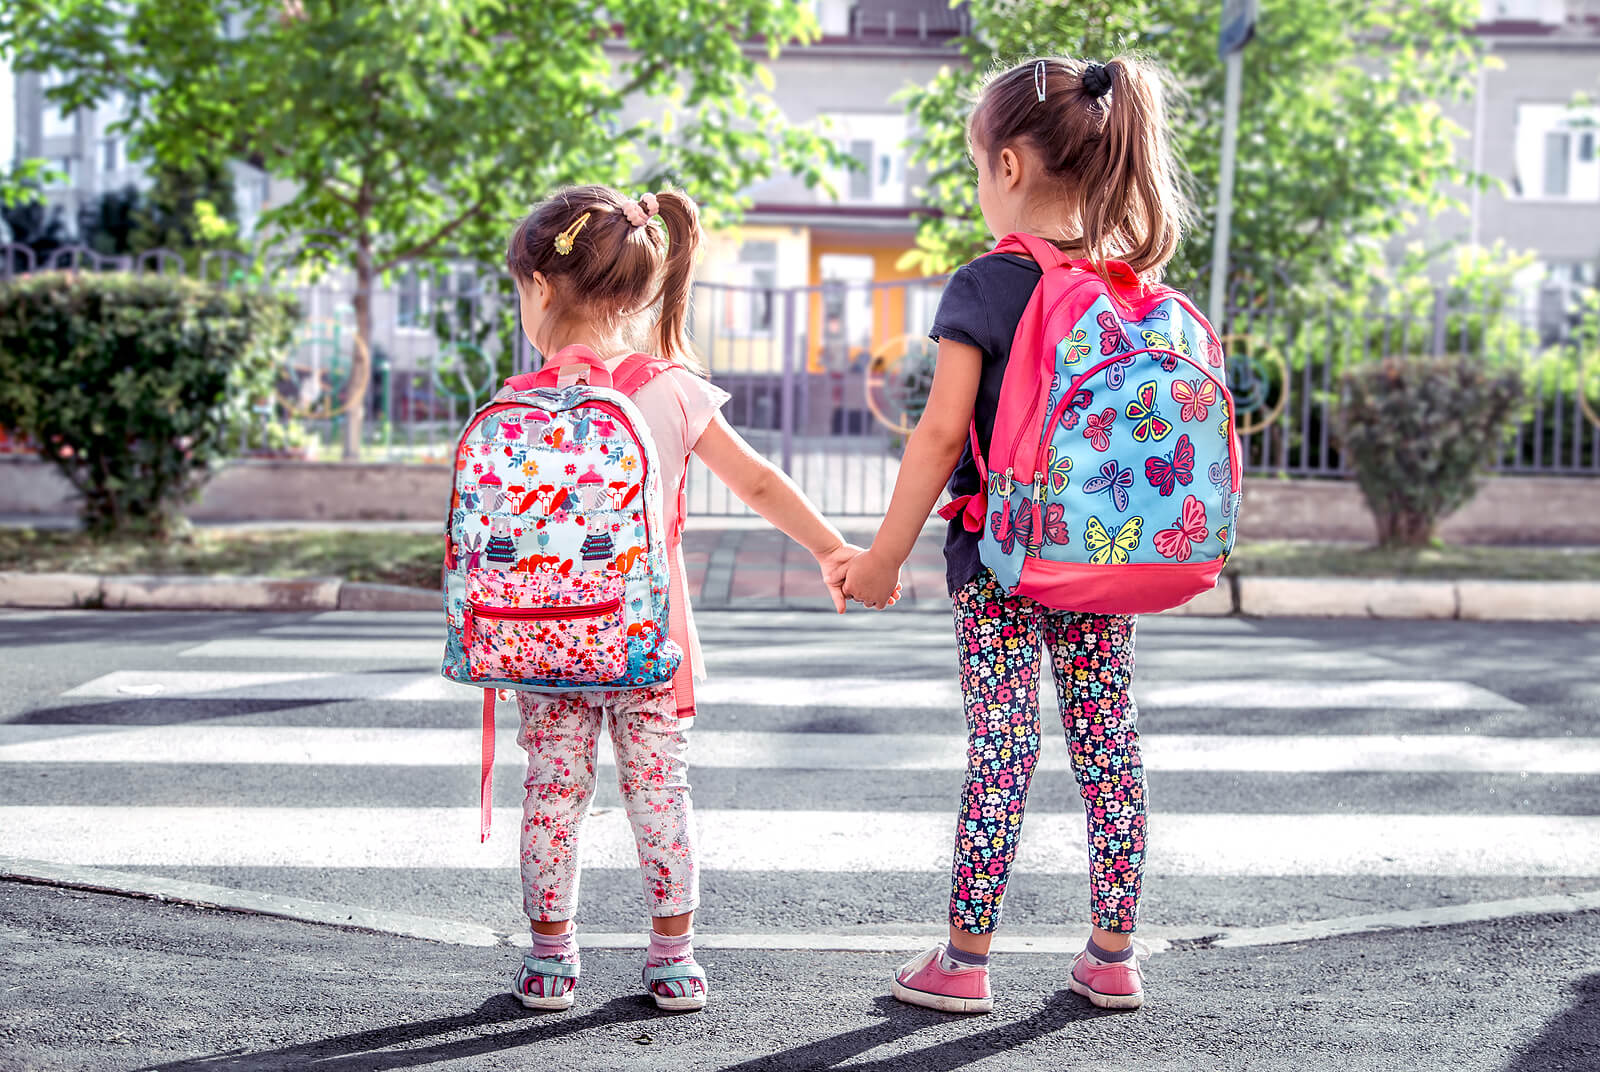 Meninas indo para a escola com suas mochilas.